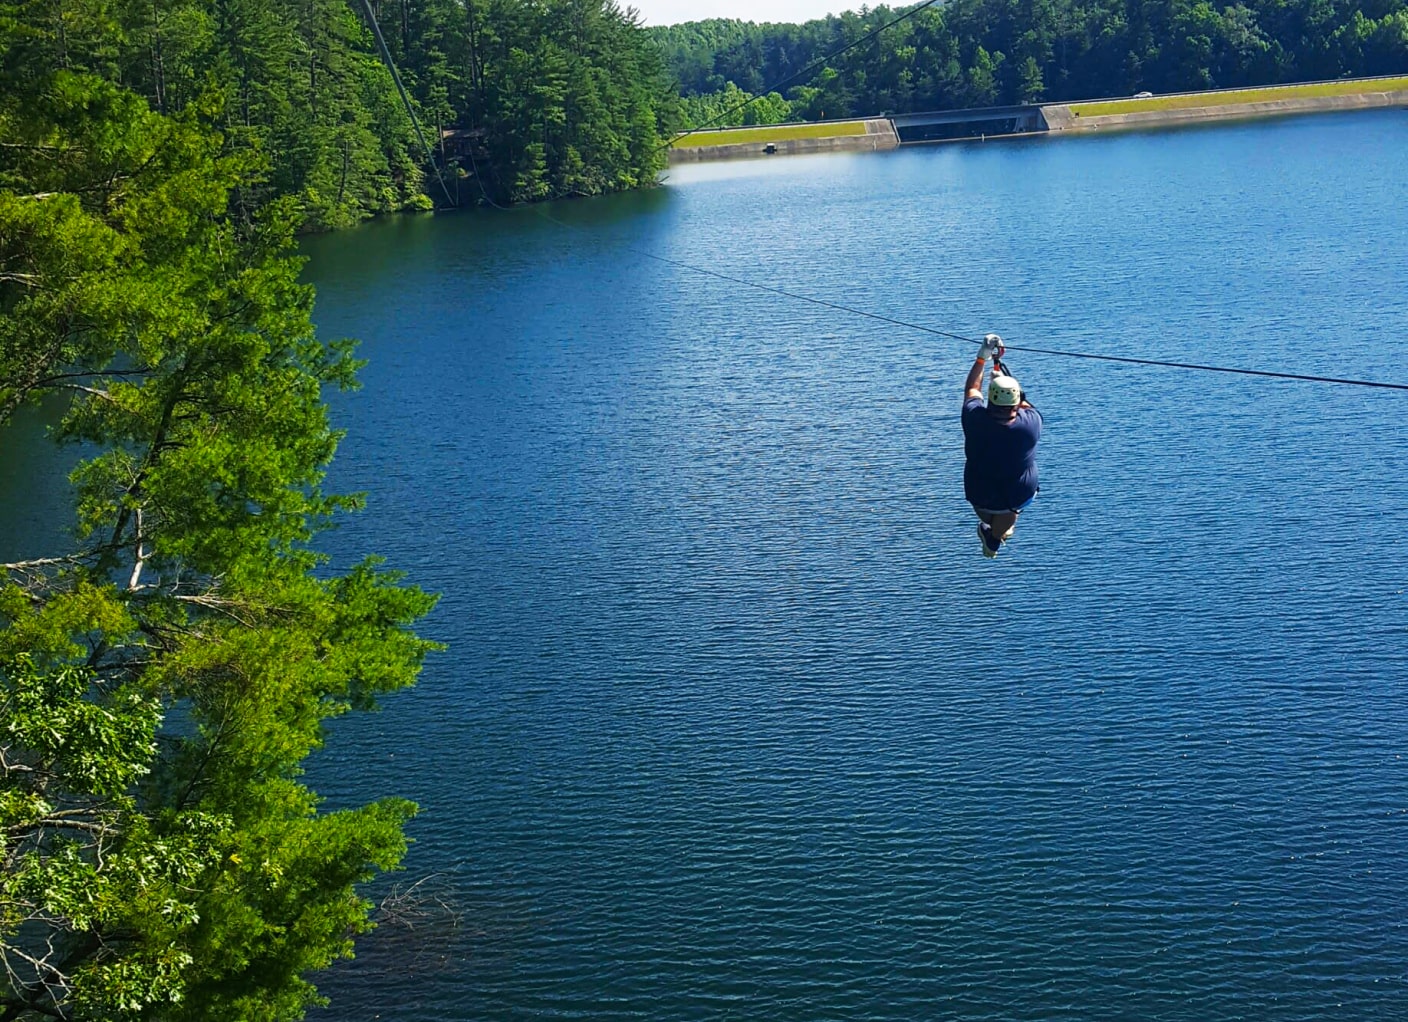 ziplining in georgia over lake